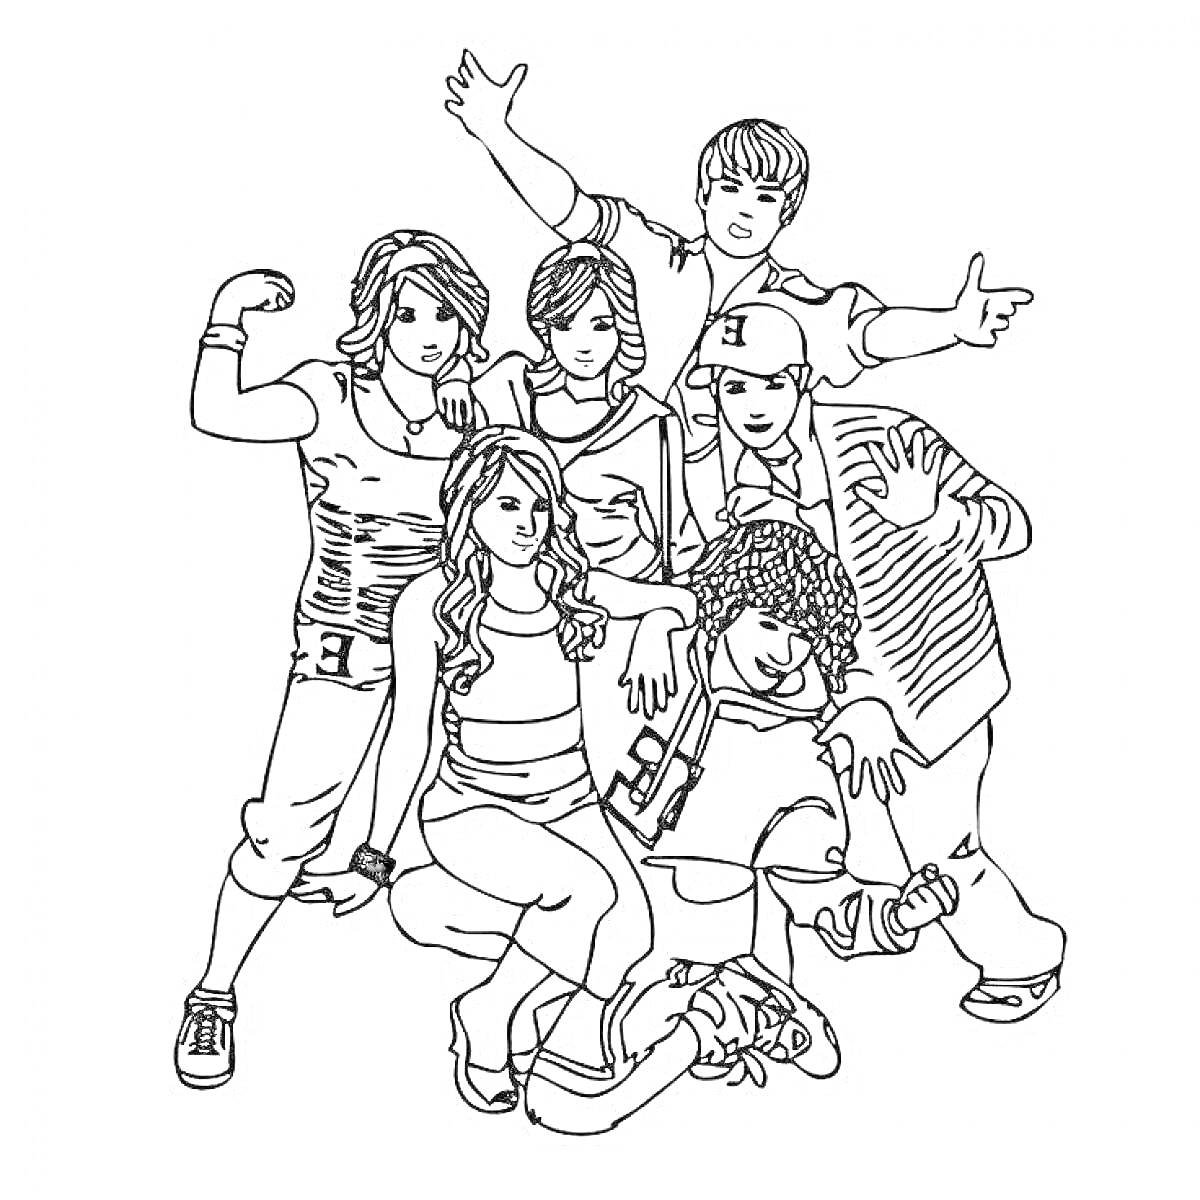 Раскраска группа подростков, позирующих вместе, некоторые показывают мускулы, некоторые стоят или сидят в спортивных позах, один подросток в кепке